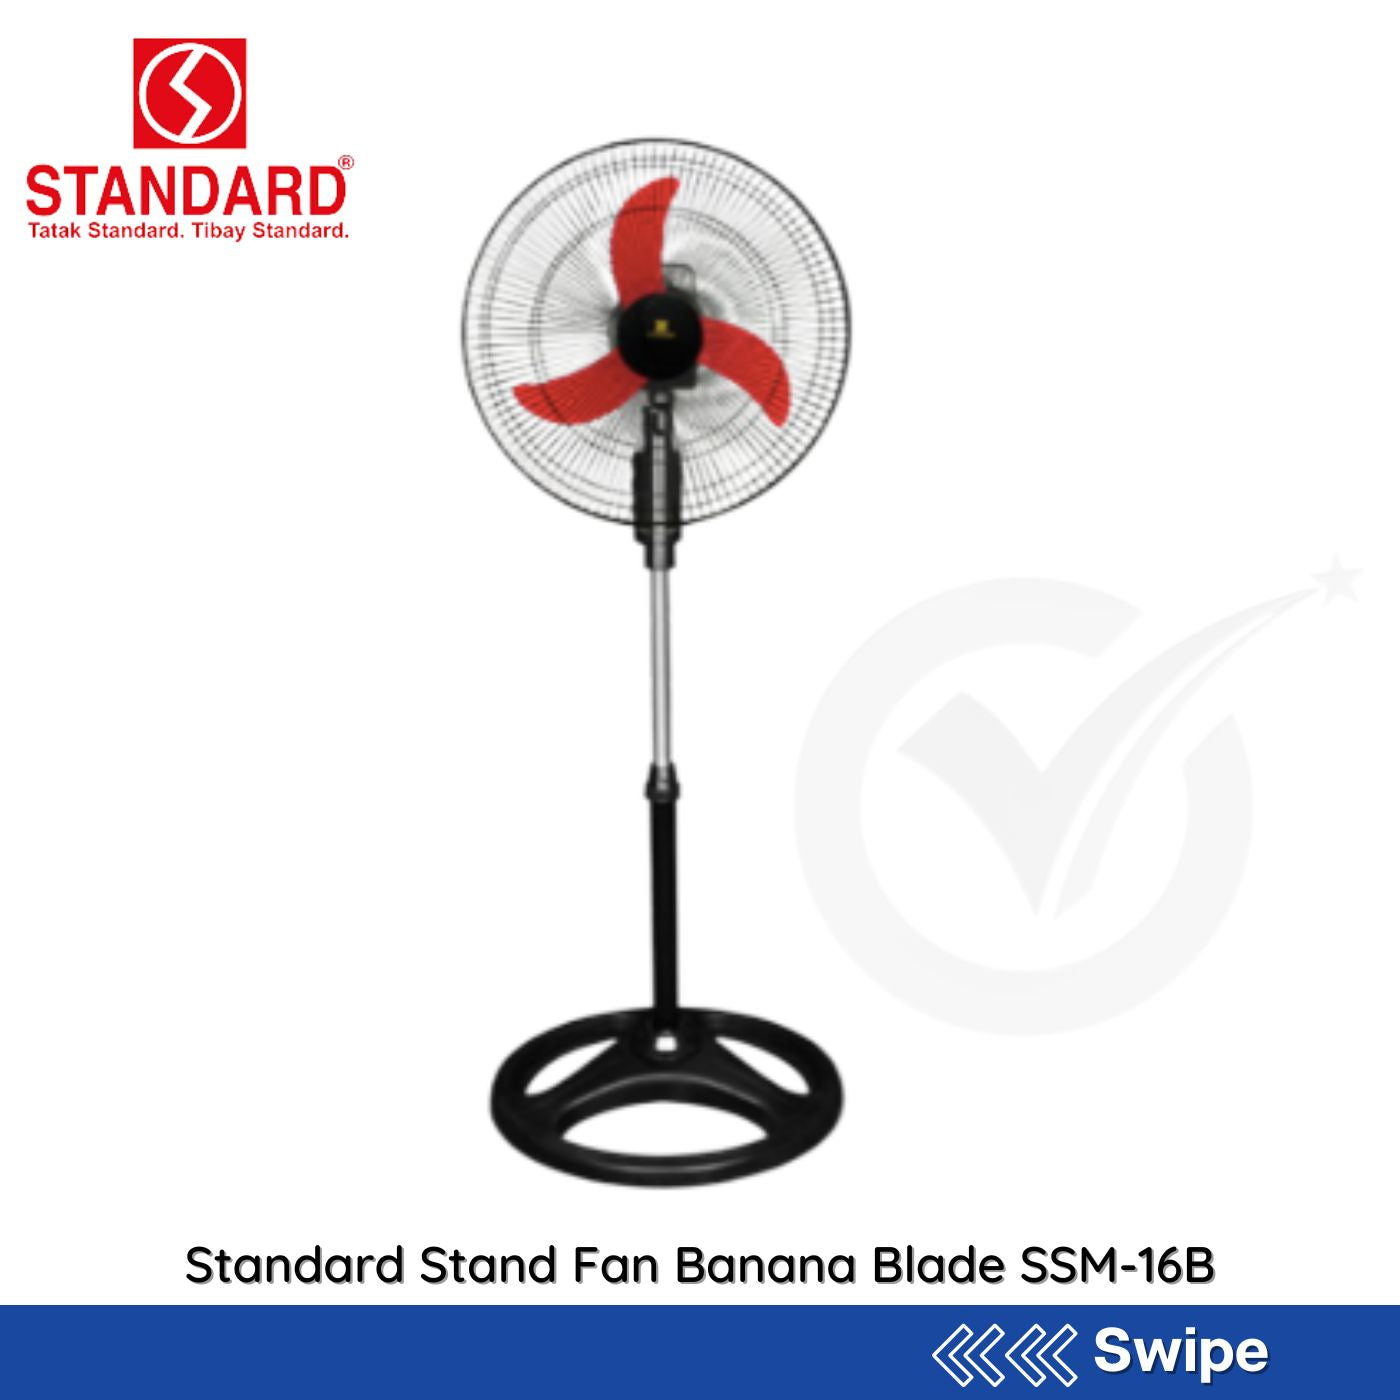 Standard Stand Fan Banana Blade SSM-16B